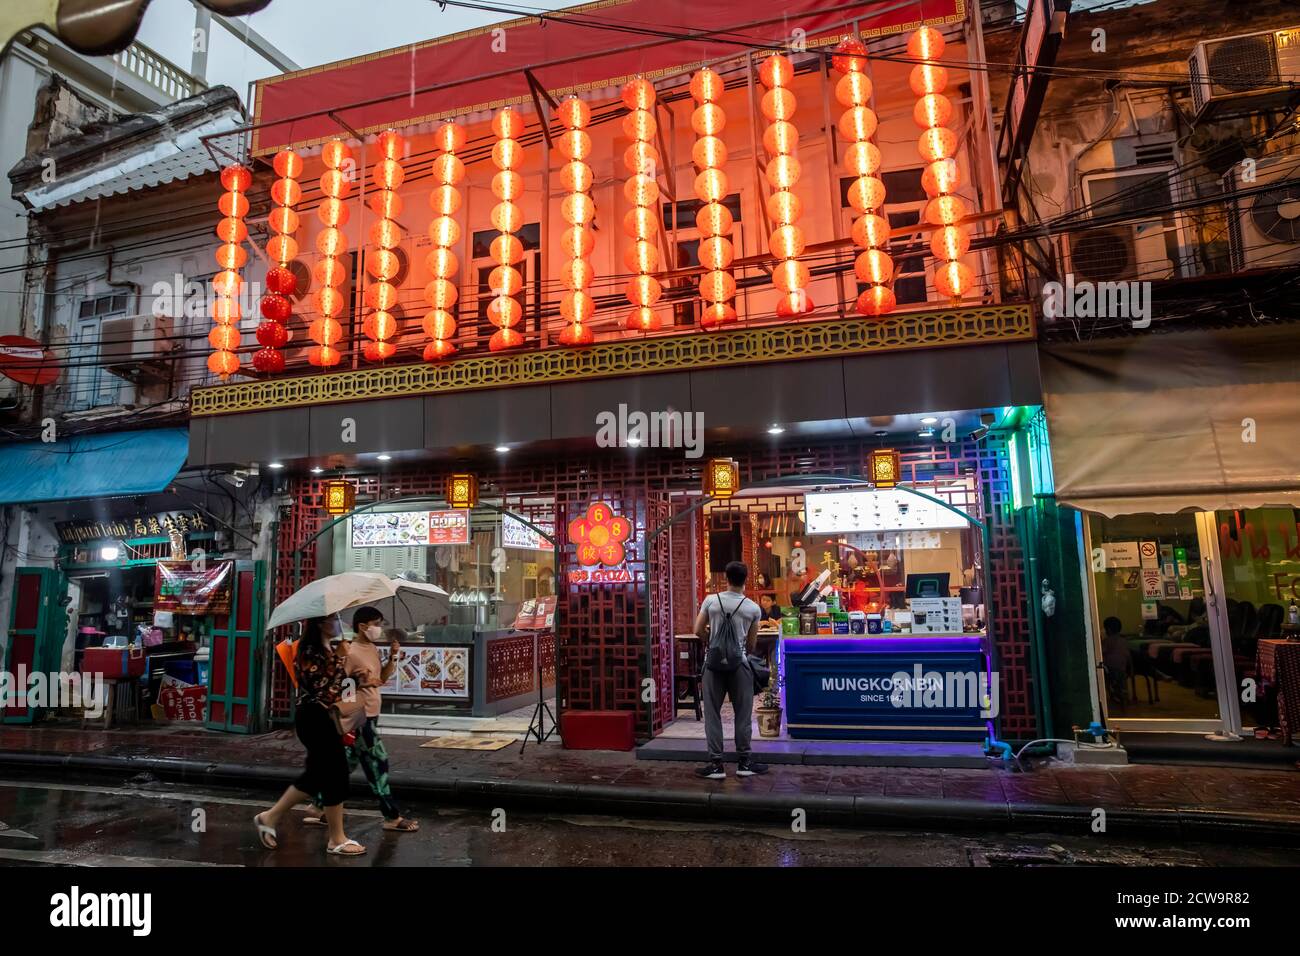 Ein Paar geht die Straße unter Sonnenschirmen entlang, während ein anderer Mann in ein Restaurant in Bangkoks Chinatown schaut. Stockfoto